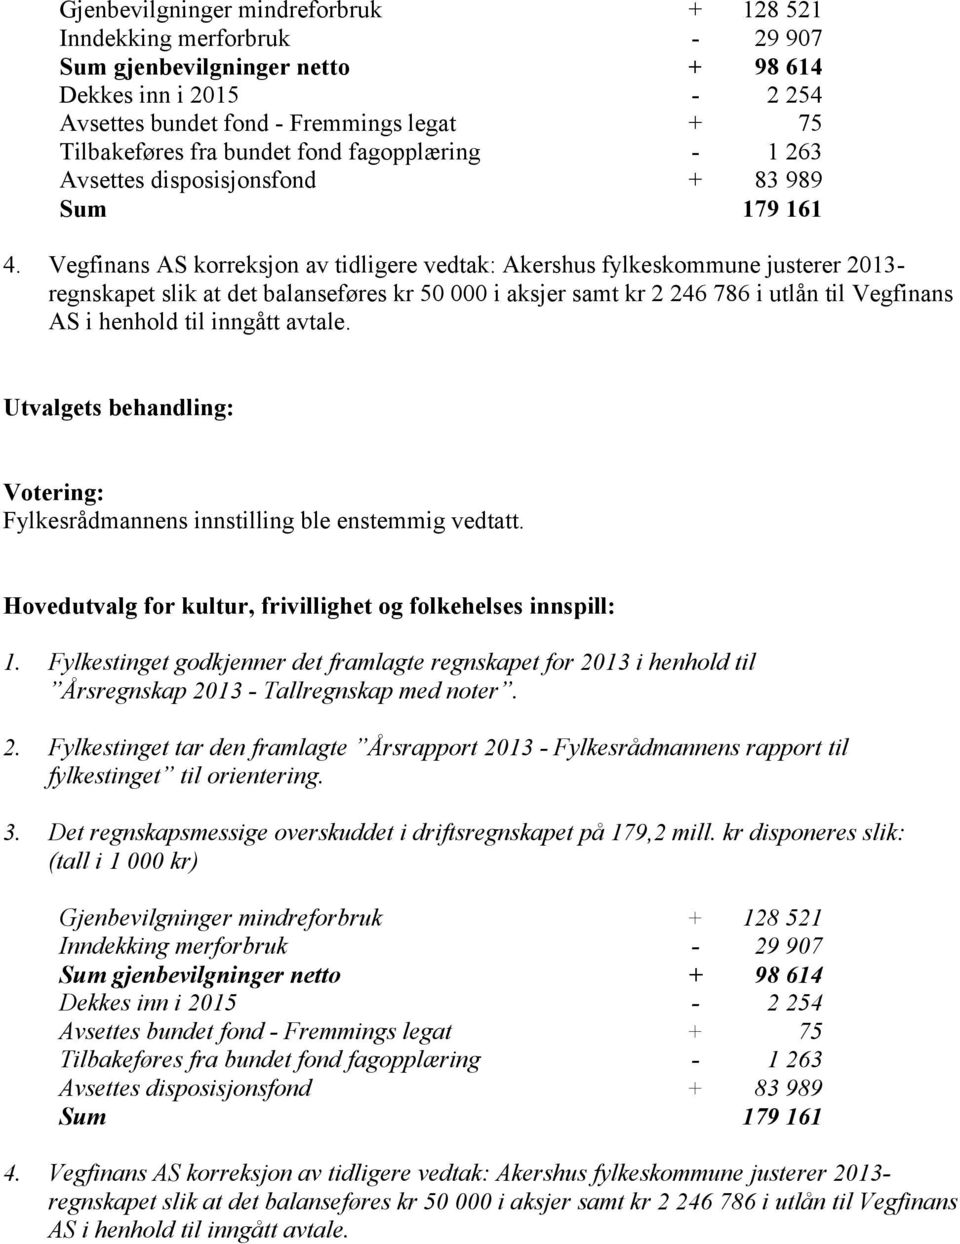 Vegfinans AS korreksjon av tidligere vedtak: Akershus fylkeskommune justerer 2013- regnskapet slik at det balanseføres kr 50 000 i aksjer samt kr 2 246 786 i utlån til Vegfinans AS i henhold til